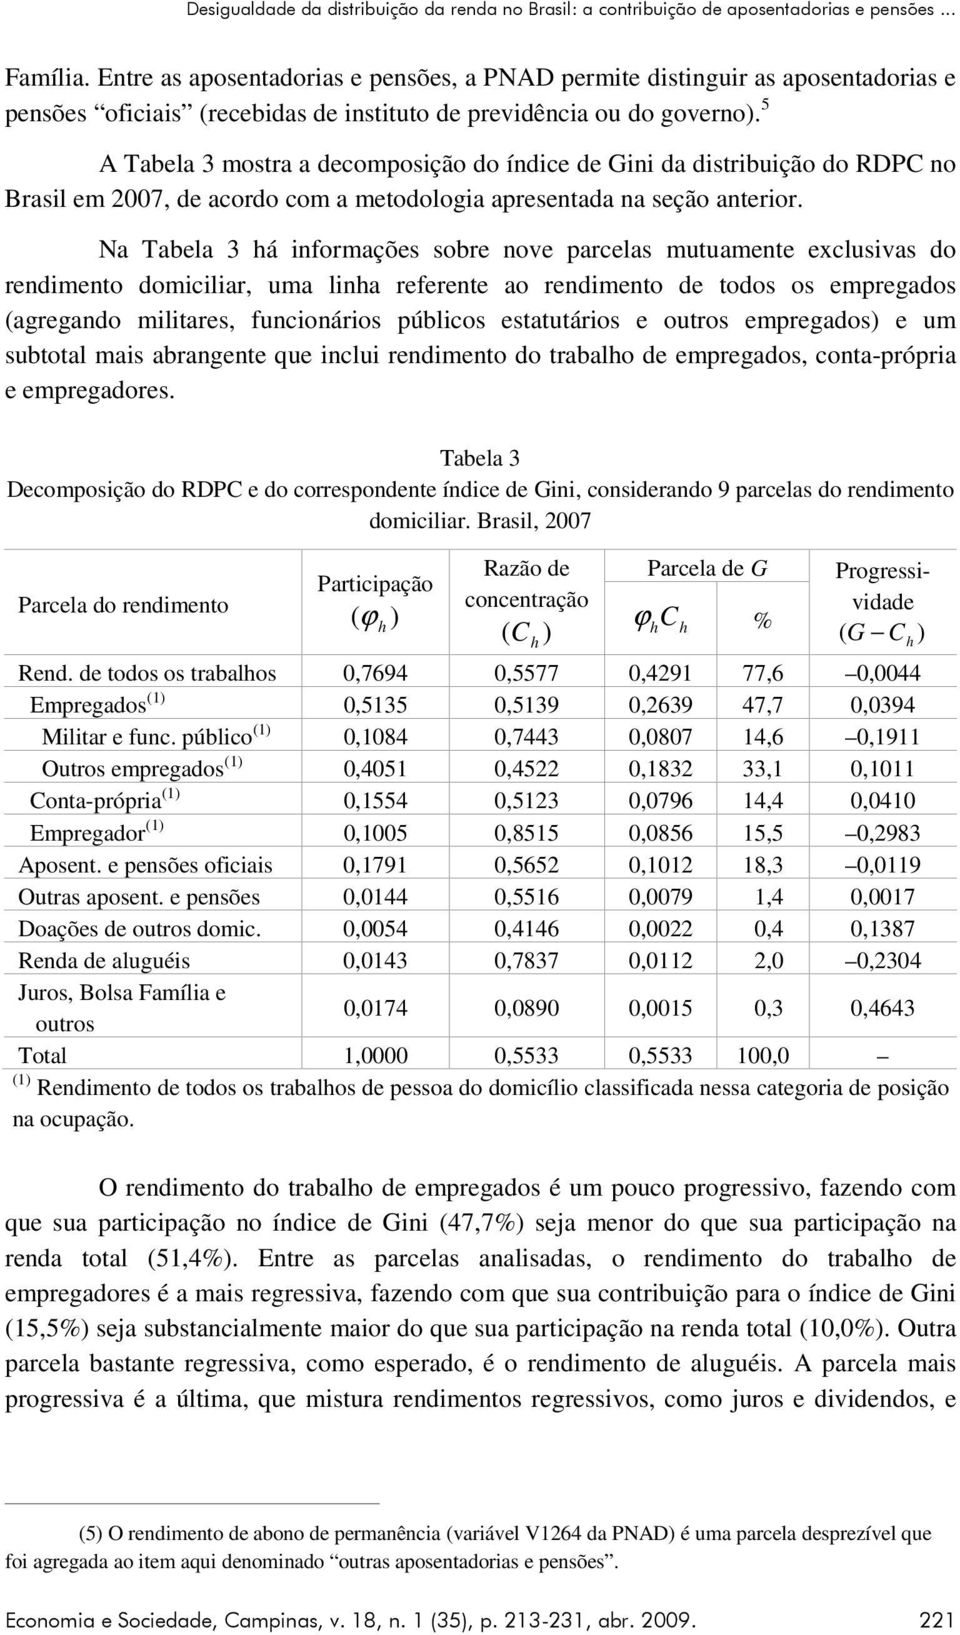 5 A Tabela 3 mostra a decomposção do índce de Gn da dstrbução do RDPC no Brasl em 2007, de acordo com a metodologa apresentada na seção anteror.